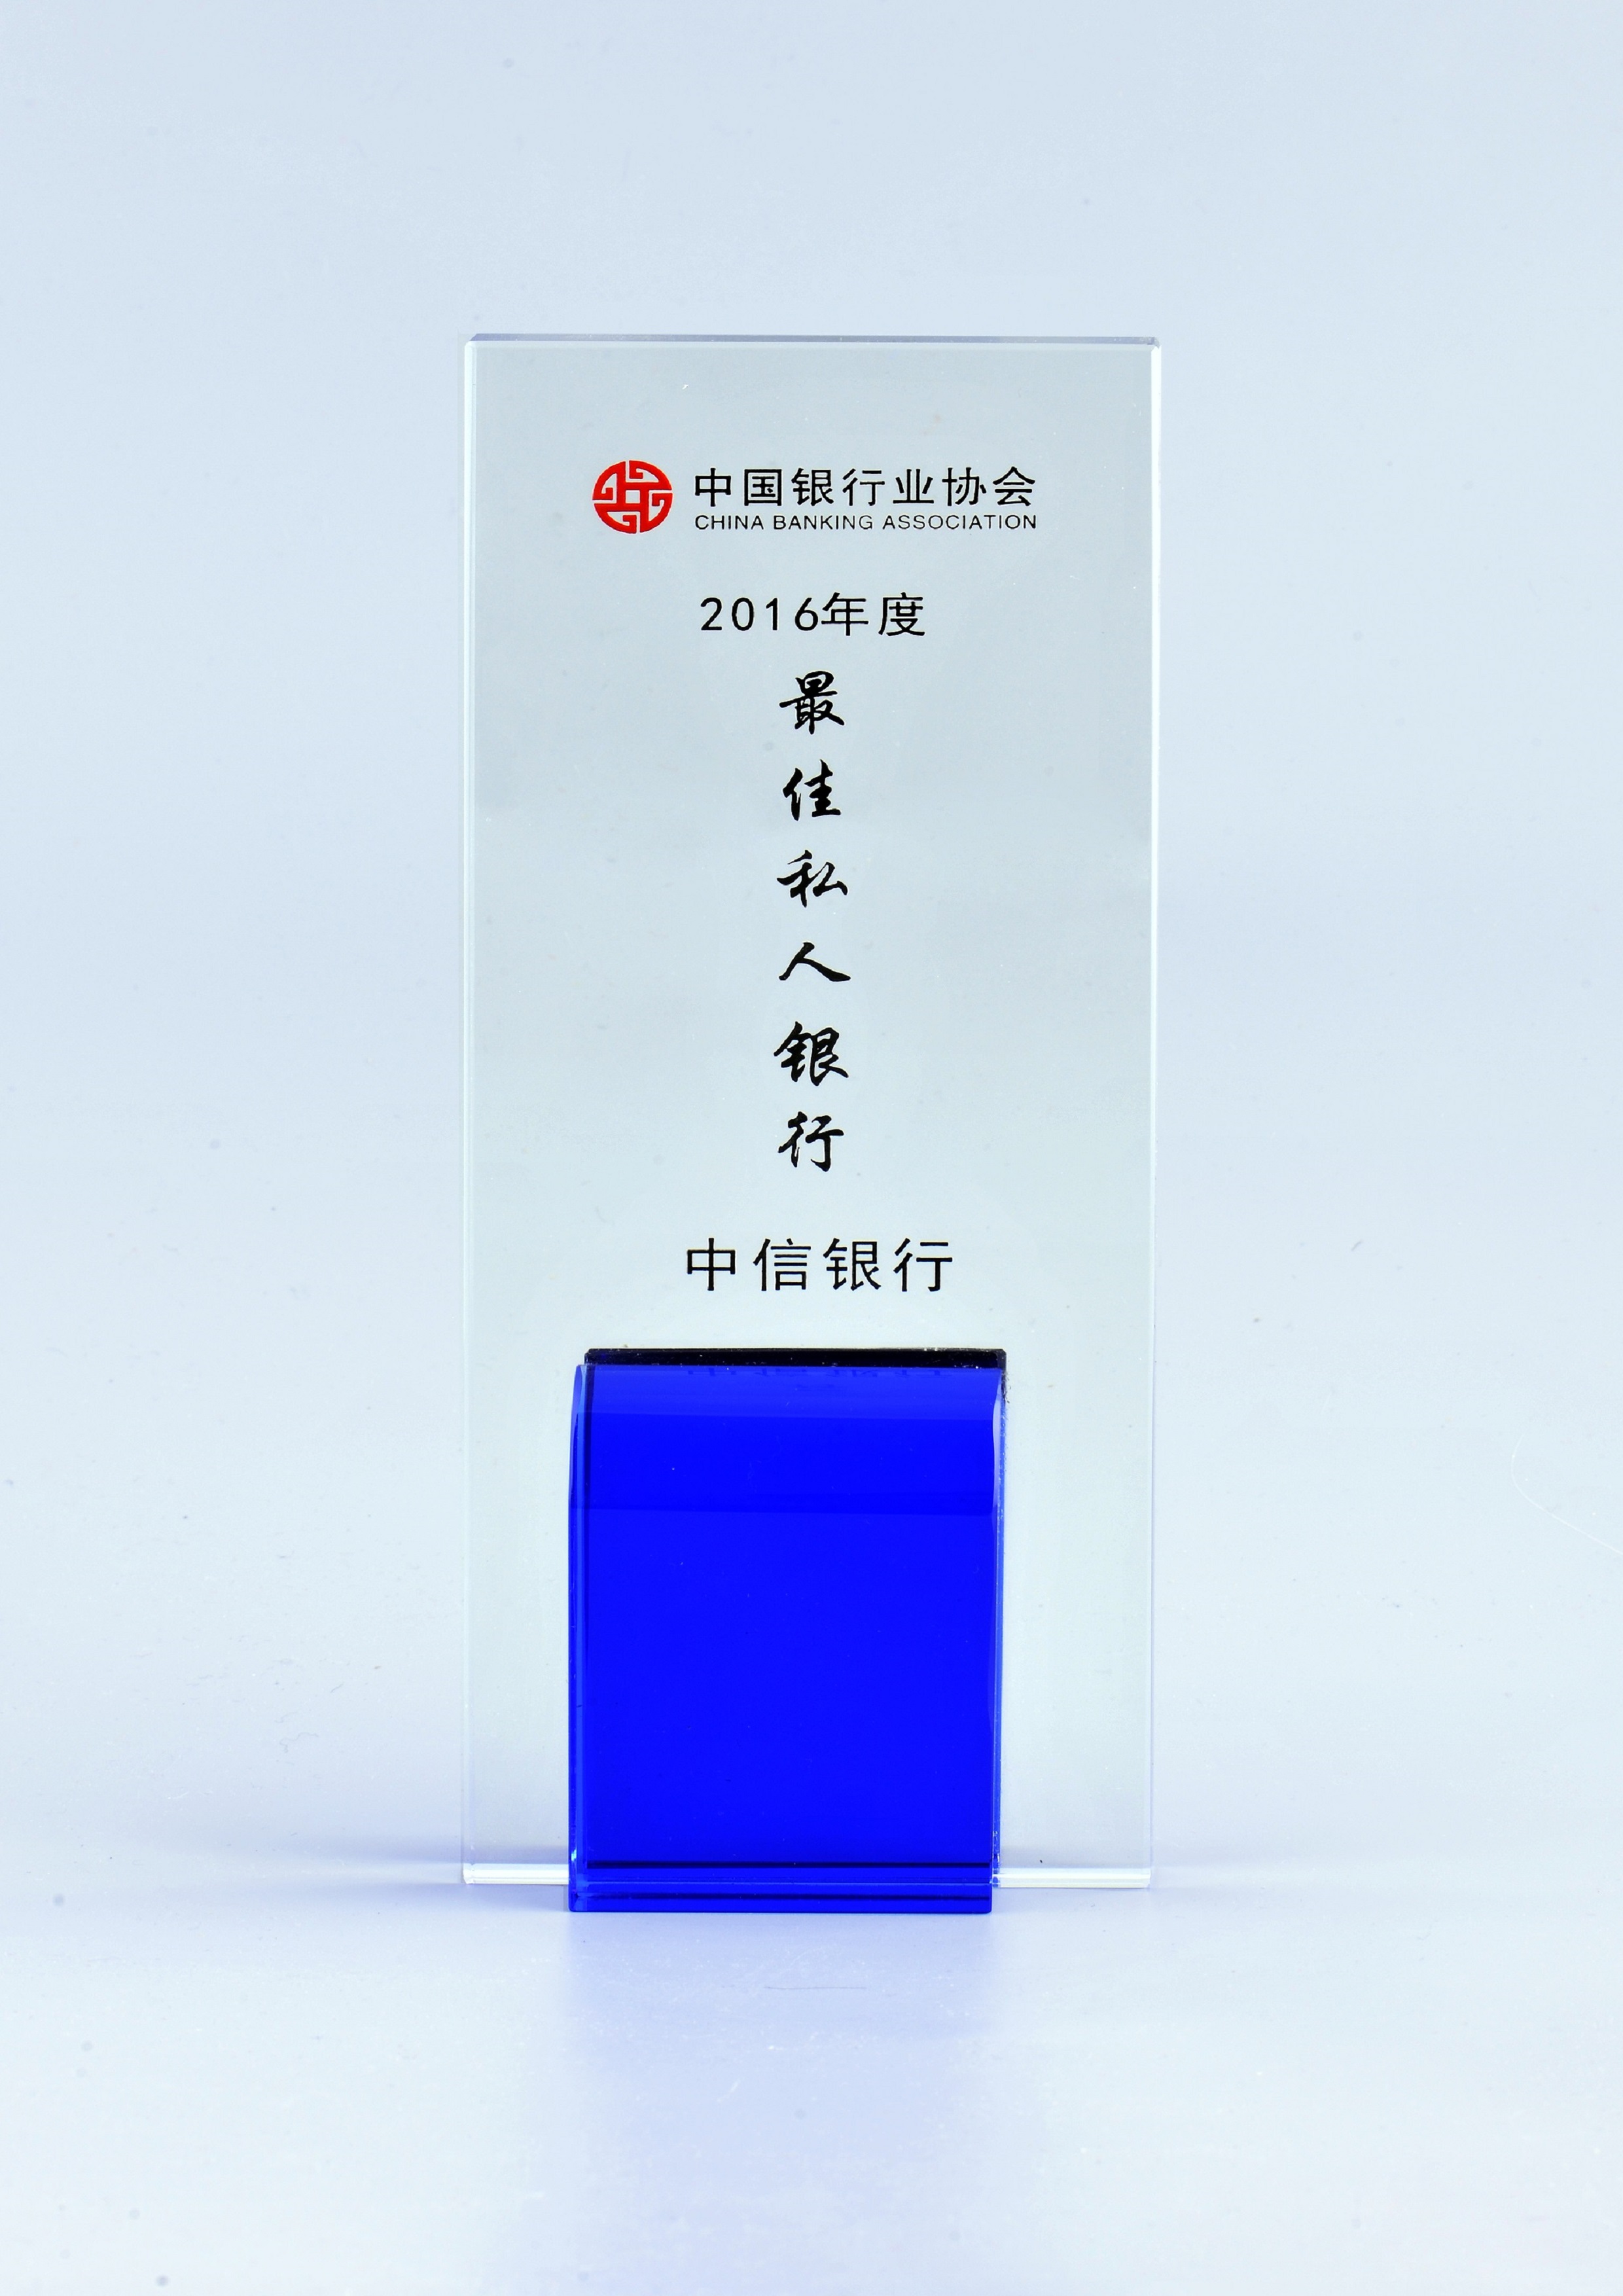 10中国最佳私人银行奖2016年度.JPG